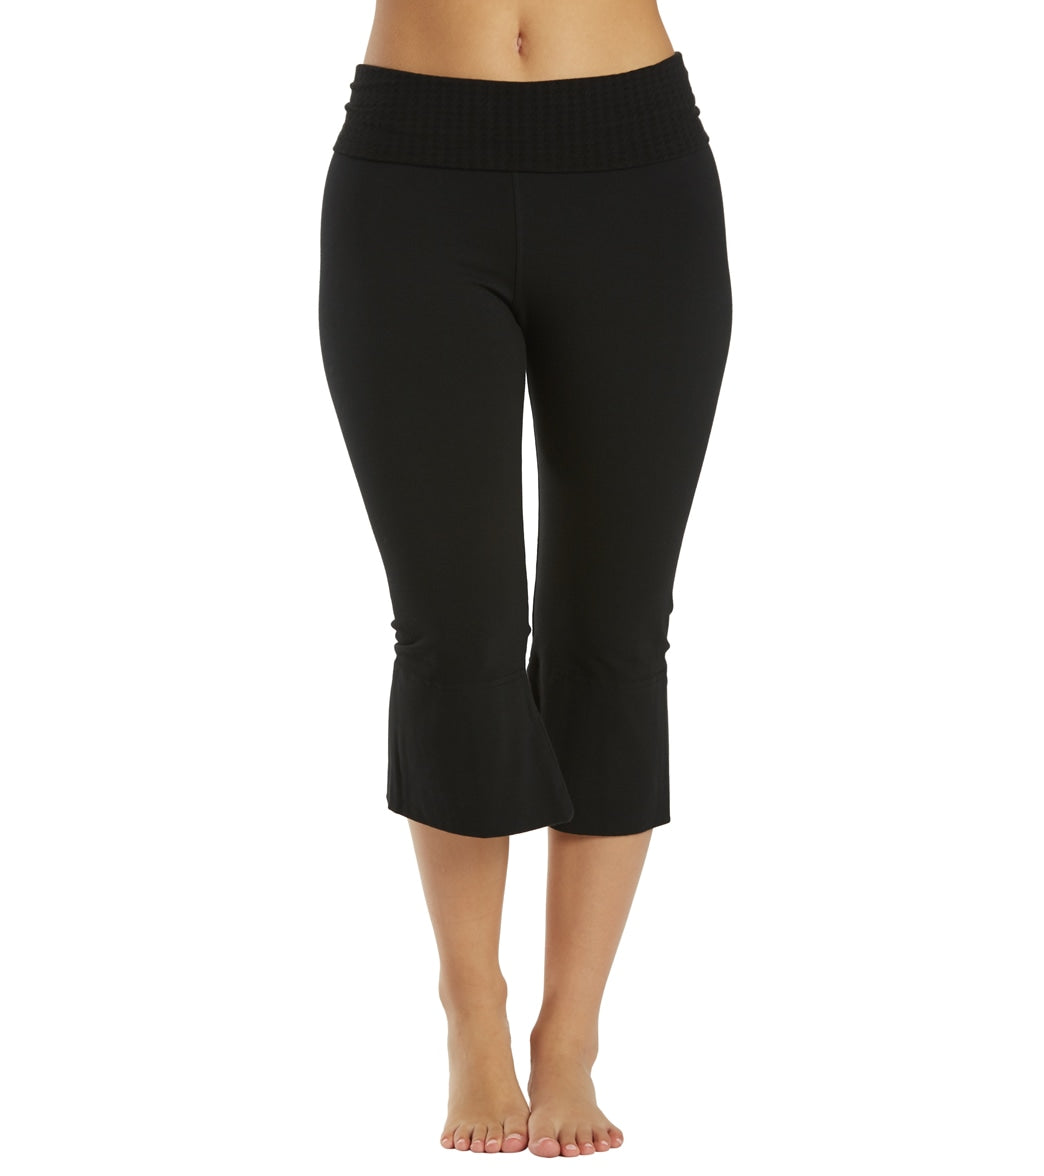 Women's Yoga Capri Pants,Black,Small